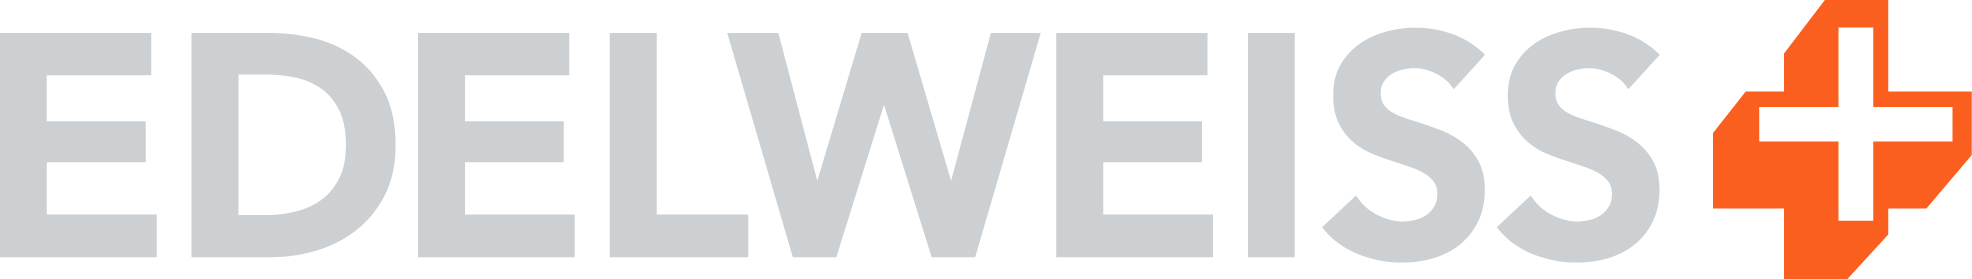 edelweiss+_logo